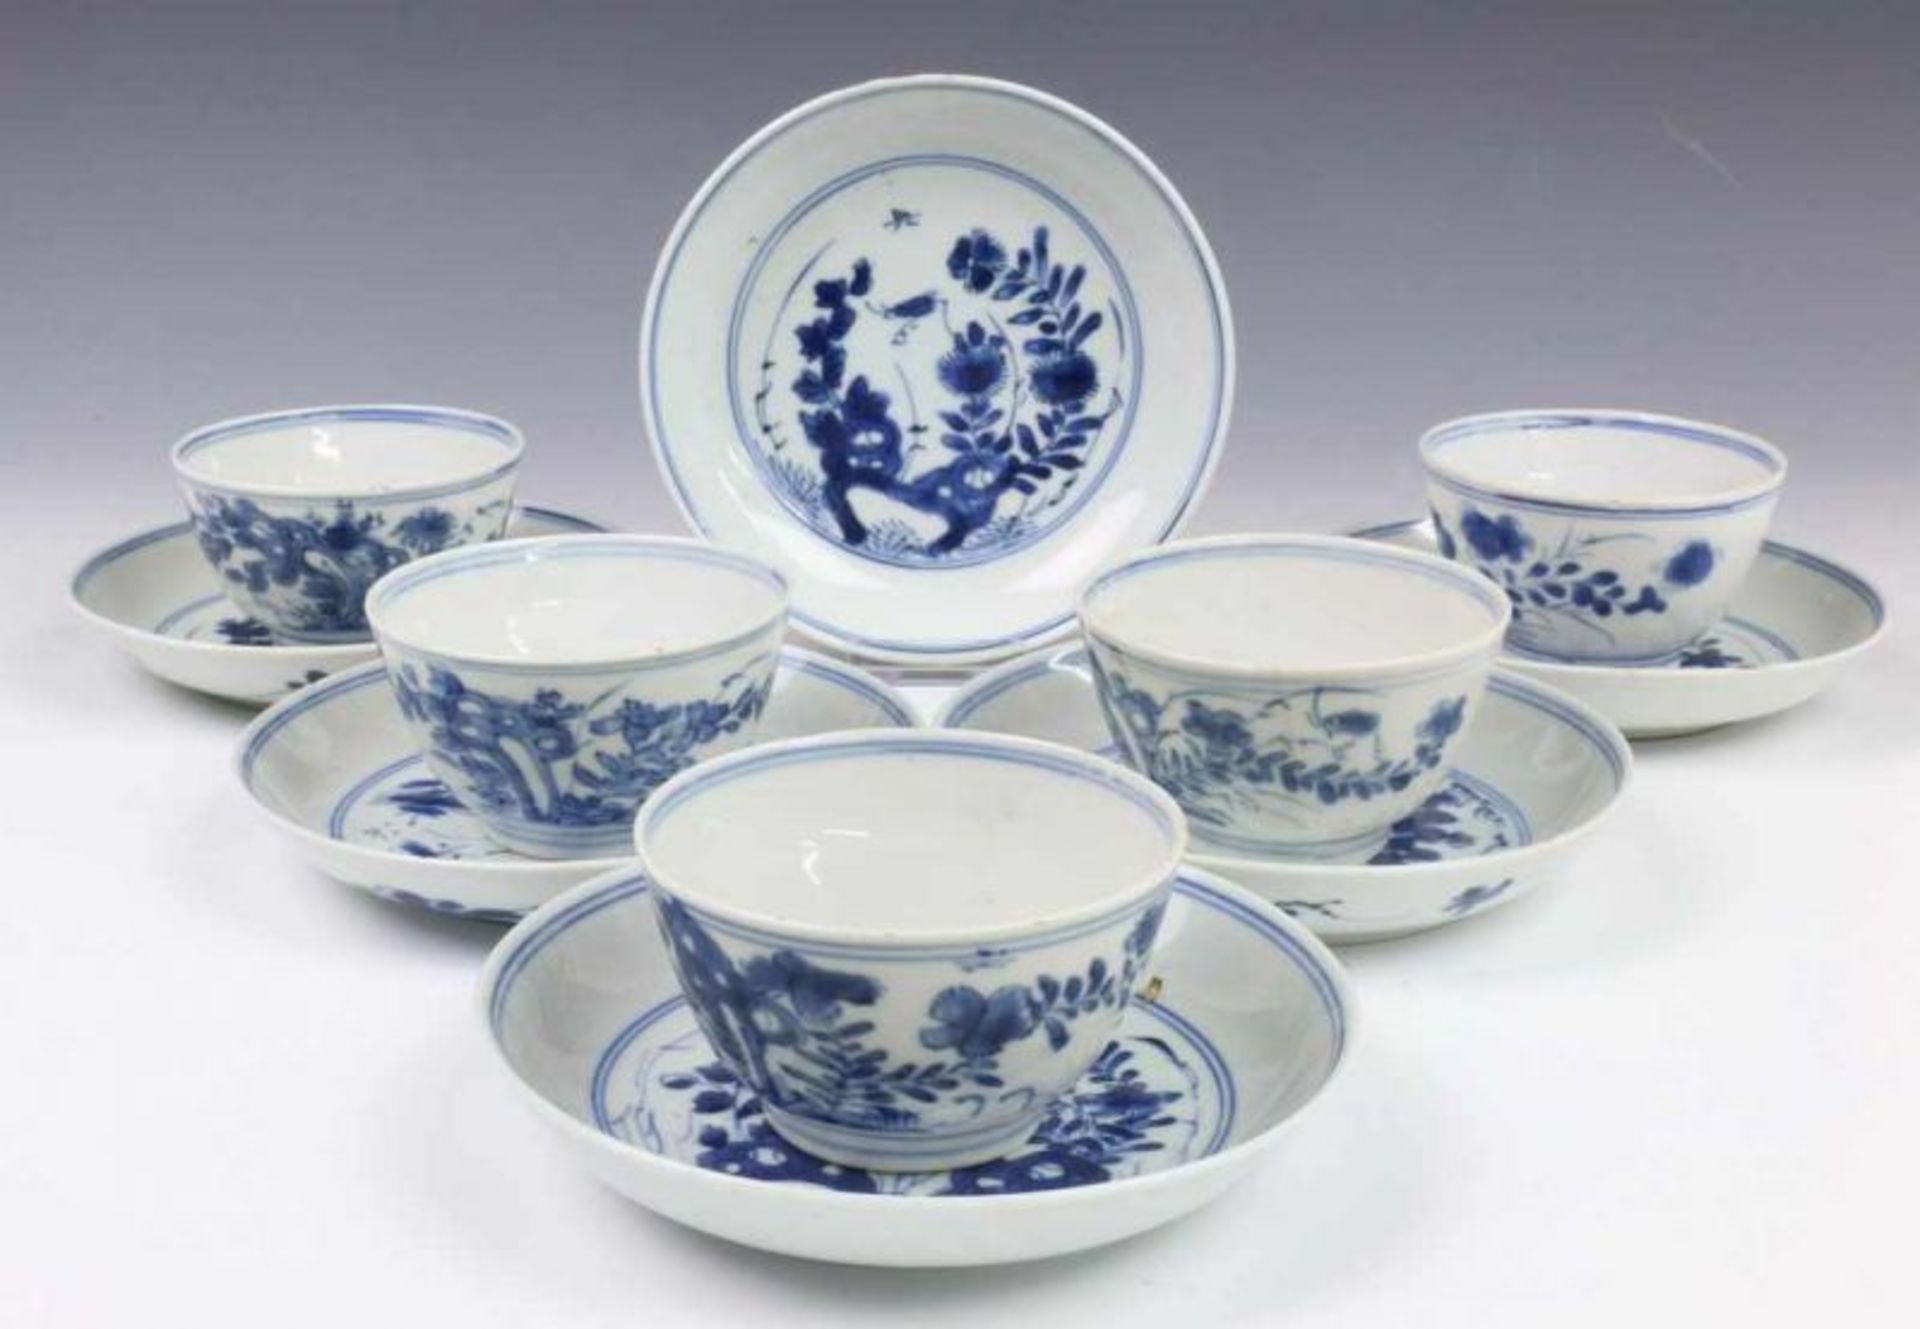 China, elf blauw-wit porseleinen koppen en twaalf schotels, 18e en 19e eeuw, in drie soorten (drie